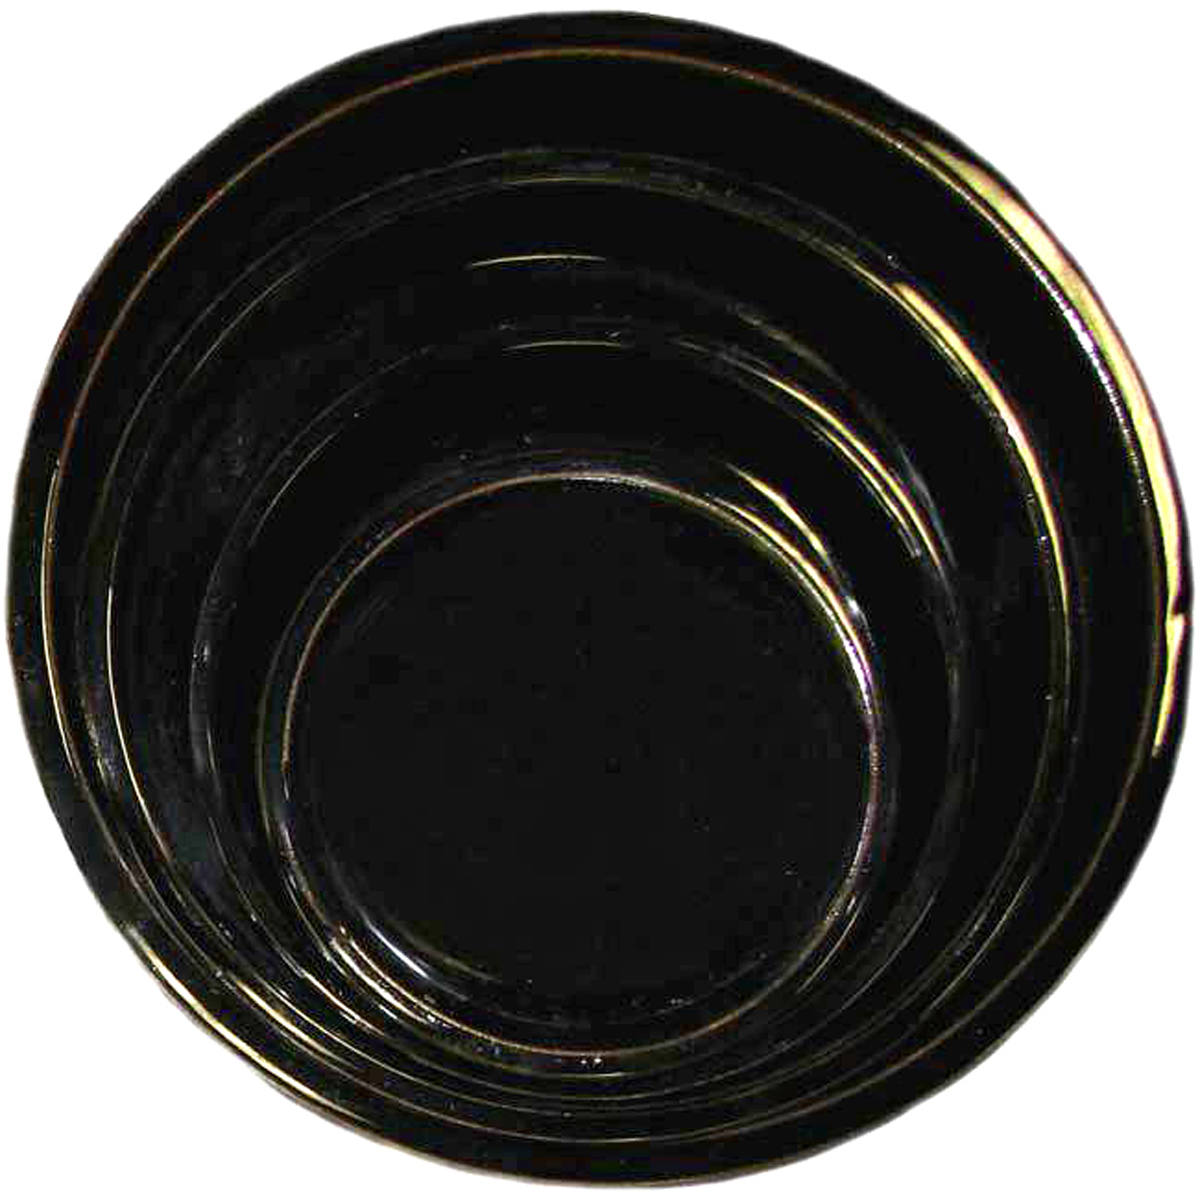 Picture of Element Ceramic Saucer S/4 Black